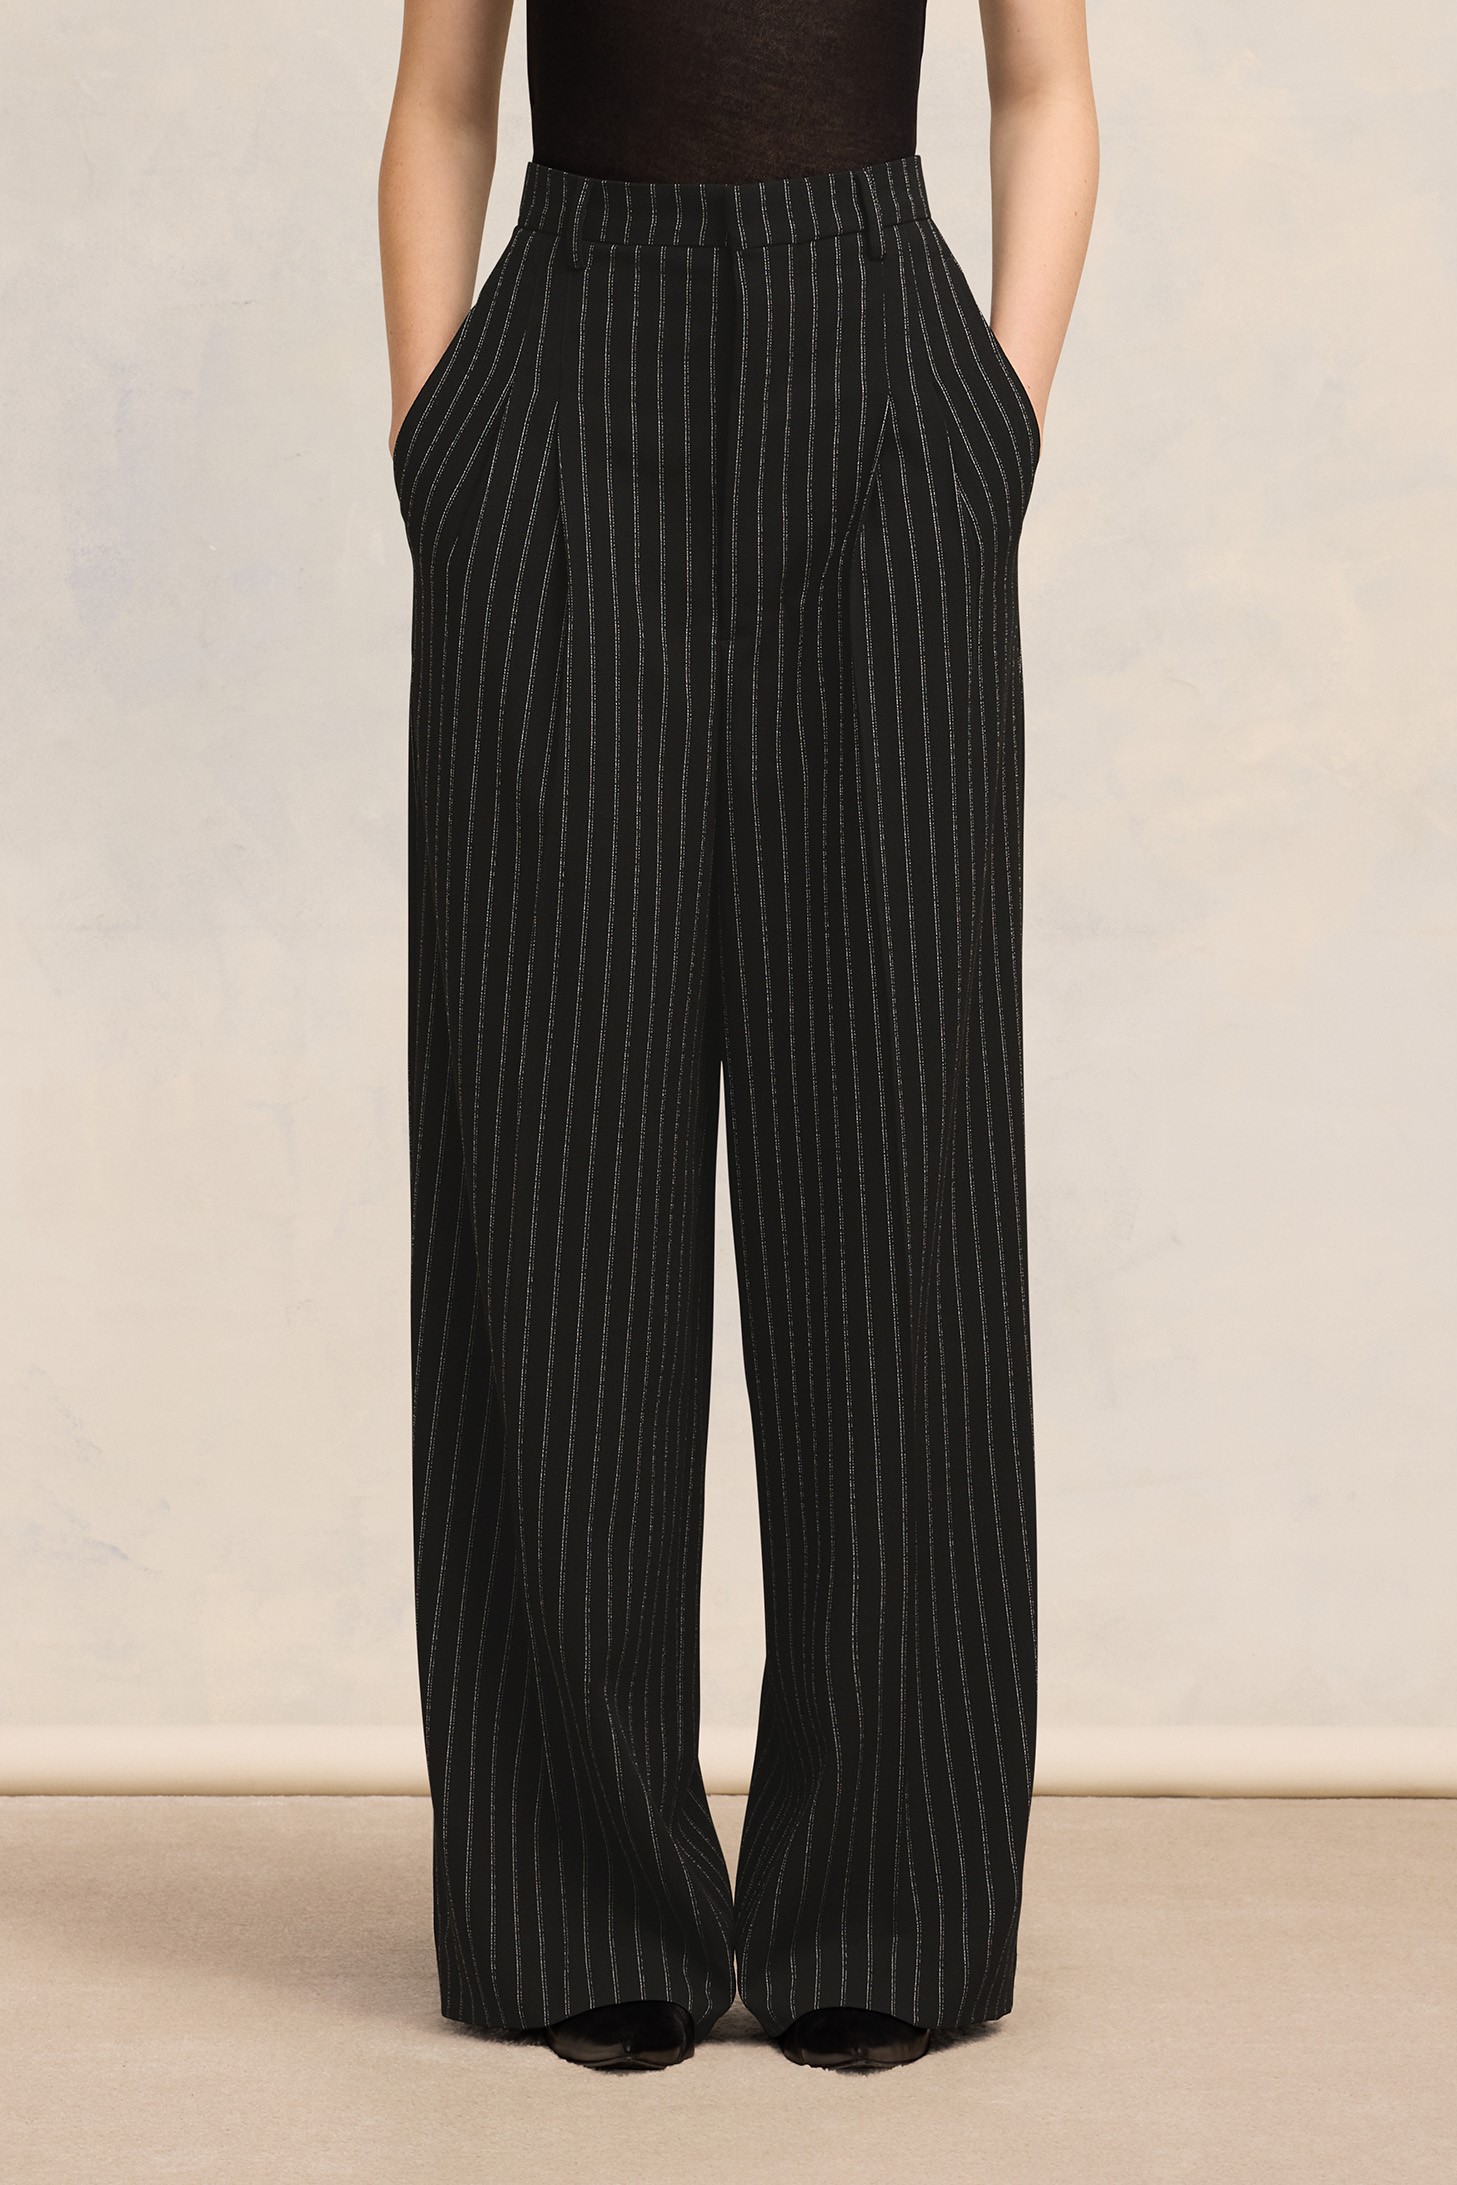 AMI PARIS High Waist Large Trouser in Black/Chalk